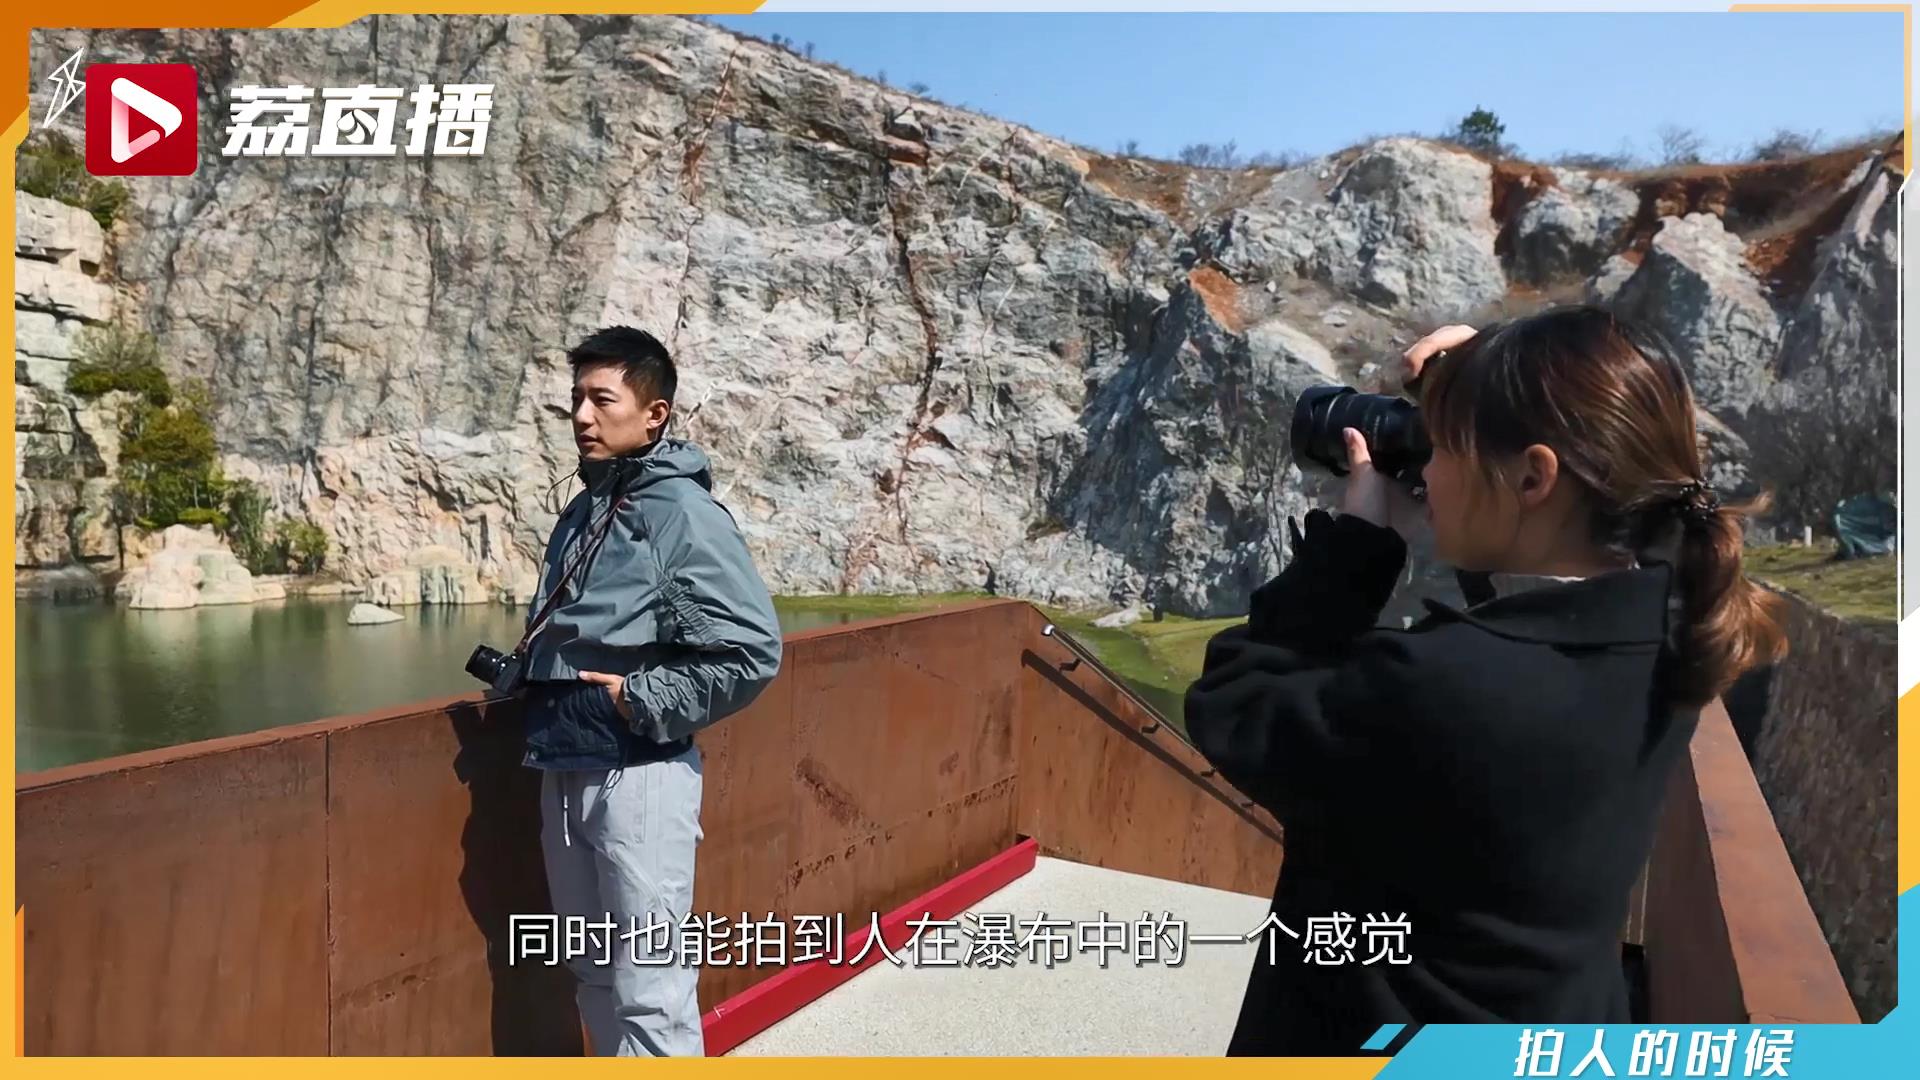 游遍江苏丨南京汤山矿坑公园有一处拍照圣地 ws